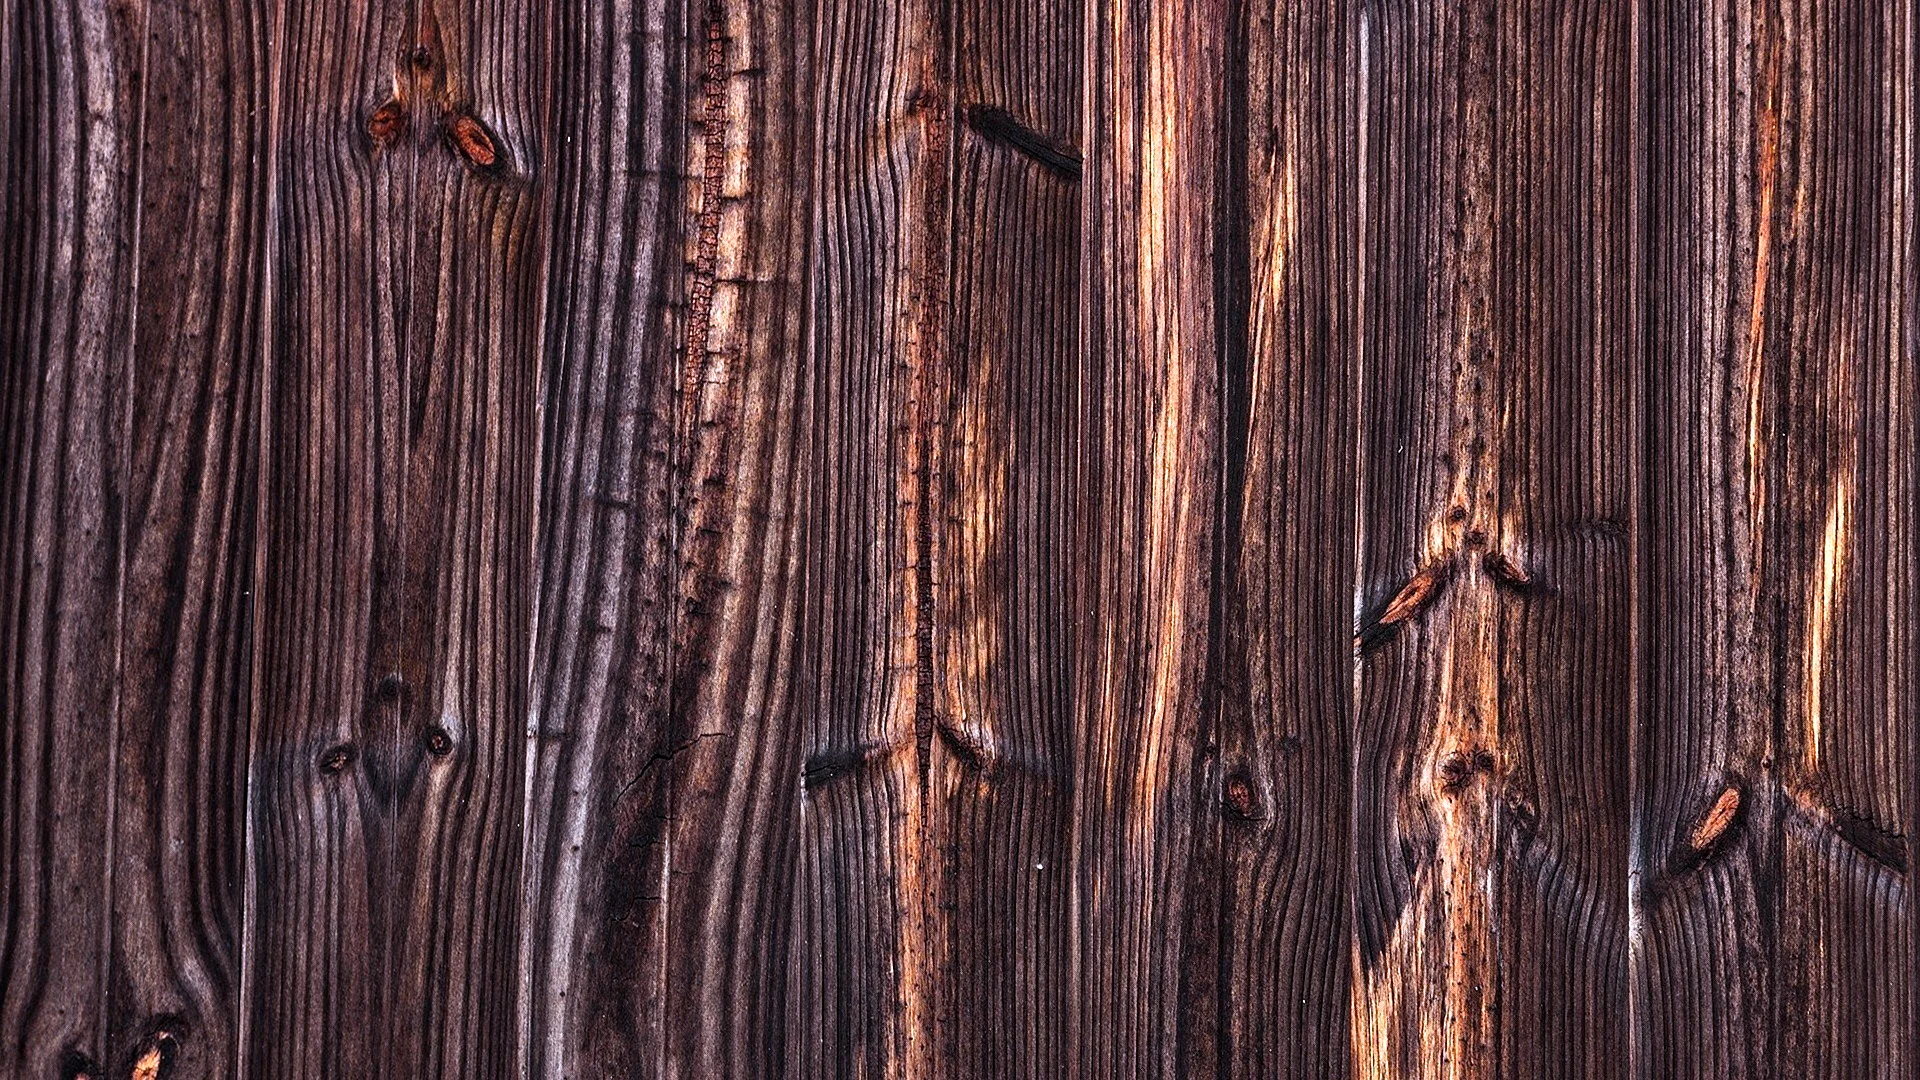 Текстура дерева